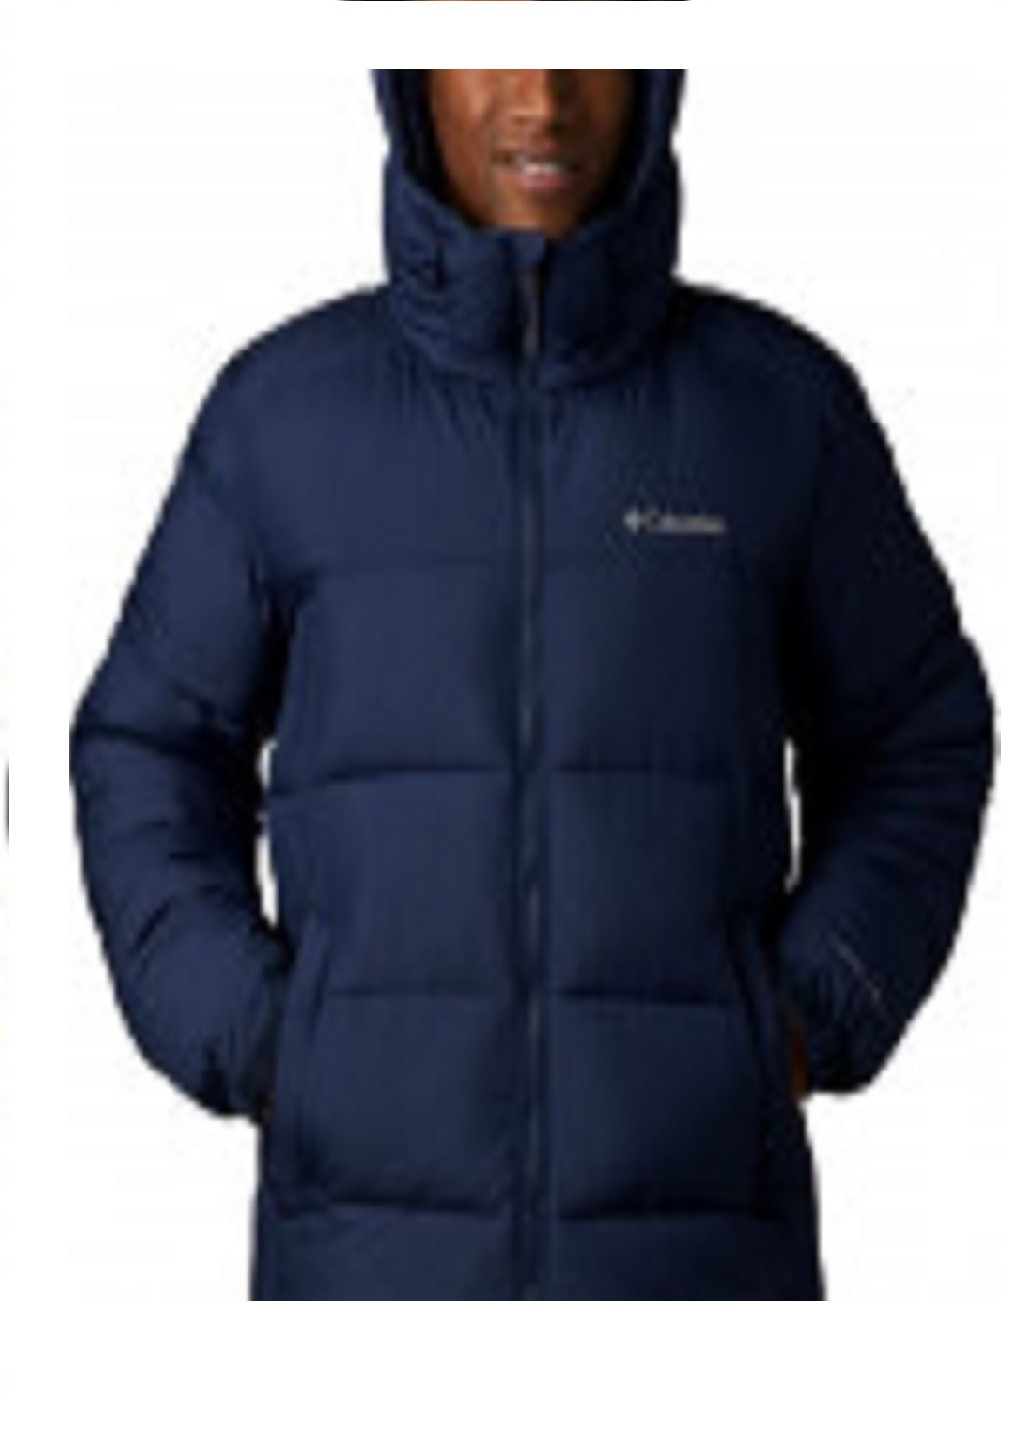 Темно-синя зимня куртка pike lake ™ hooded jacket Columbia